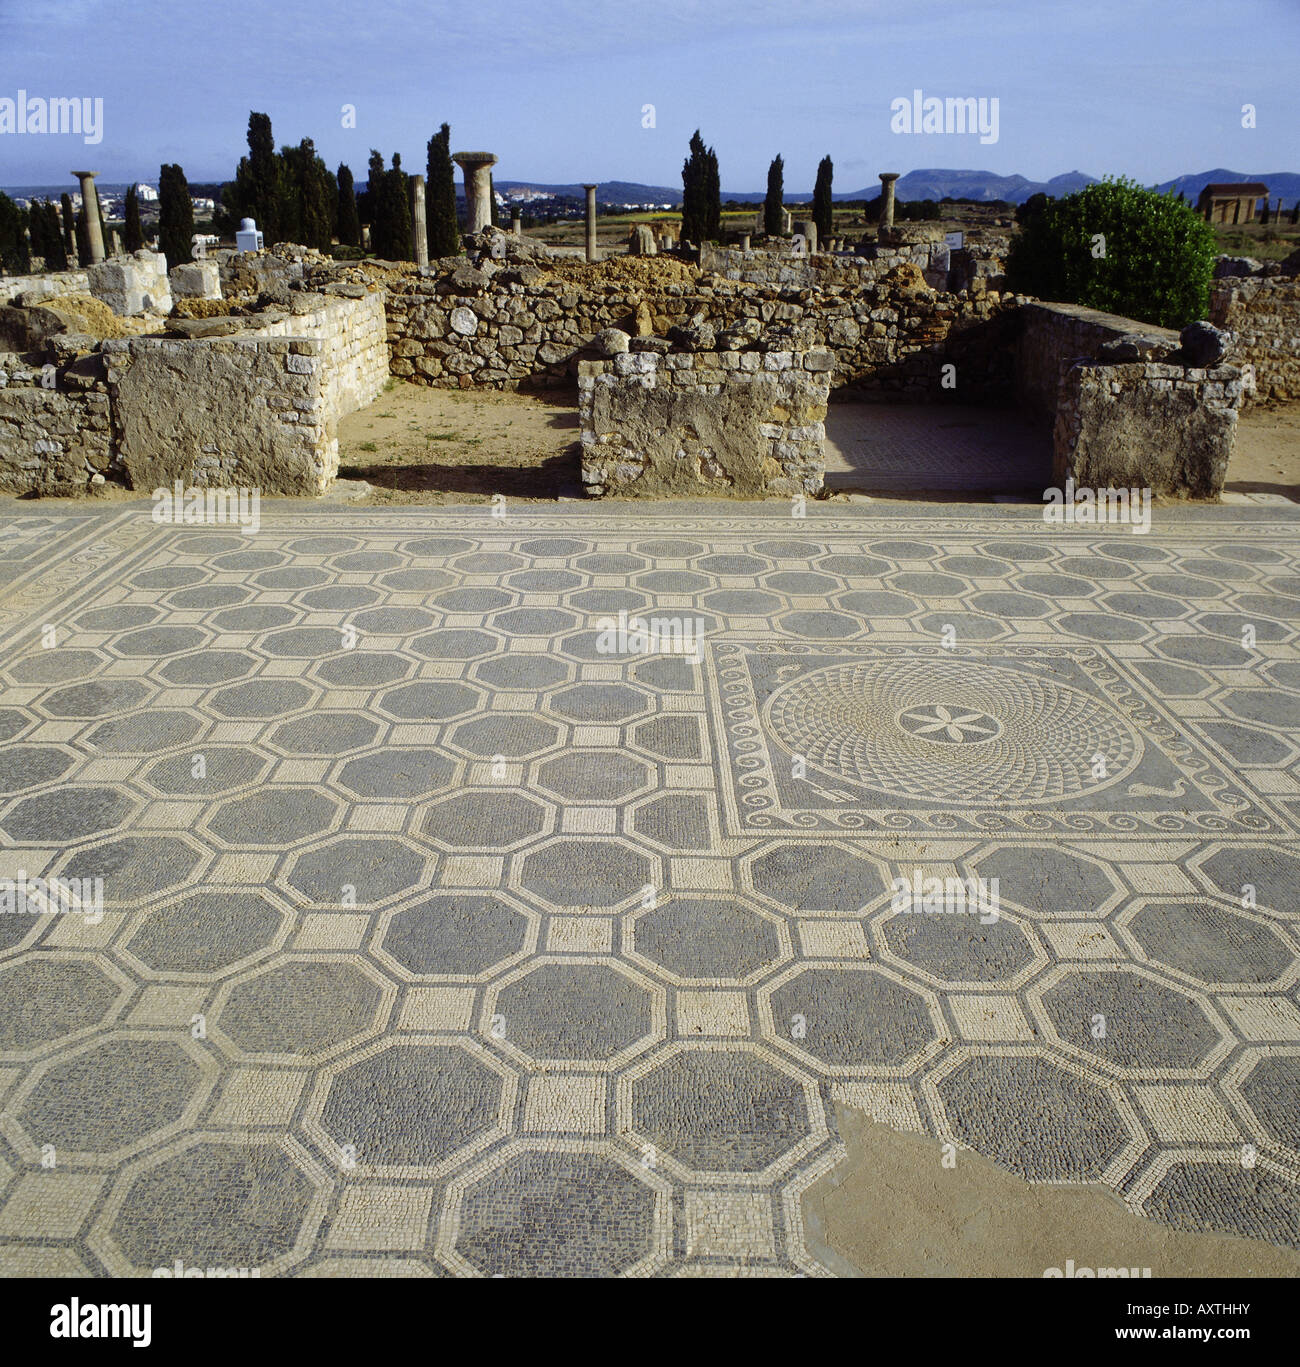 Geografía / viajes, España, provincia de Gerona, Ampurias, ruinas de la ciudad romana, la casa no. 1, en el piso de mosaico, excavaciones, Foto de stock